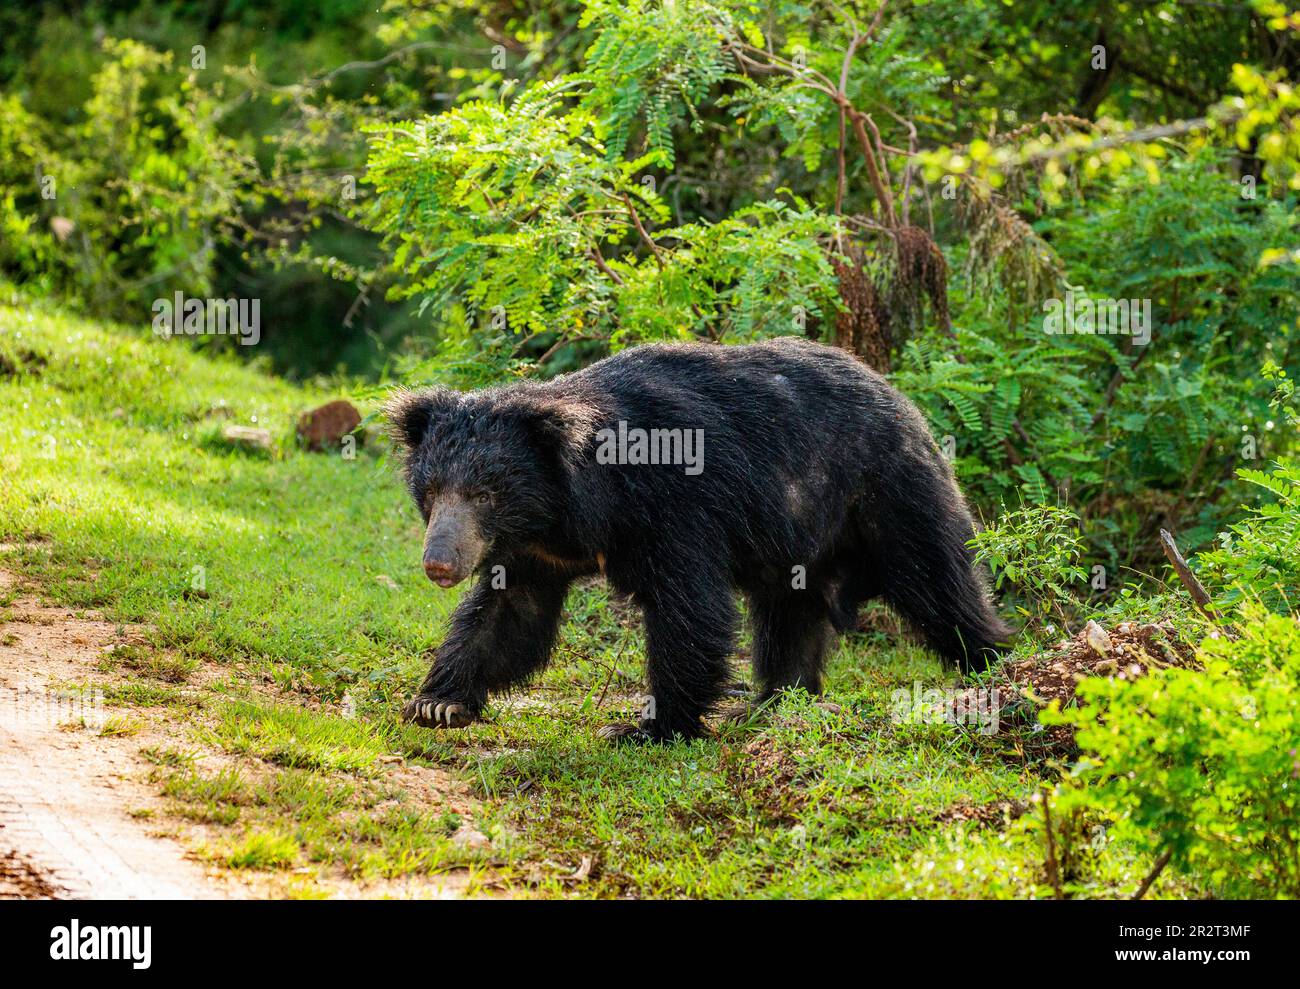 L'ours sloth sri-lankais (Melursus ursinus inornatus) est en marche le long de la route dans le parc national de Yala. Sri Lanka. Banque D'Images